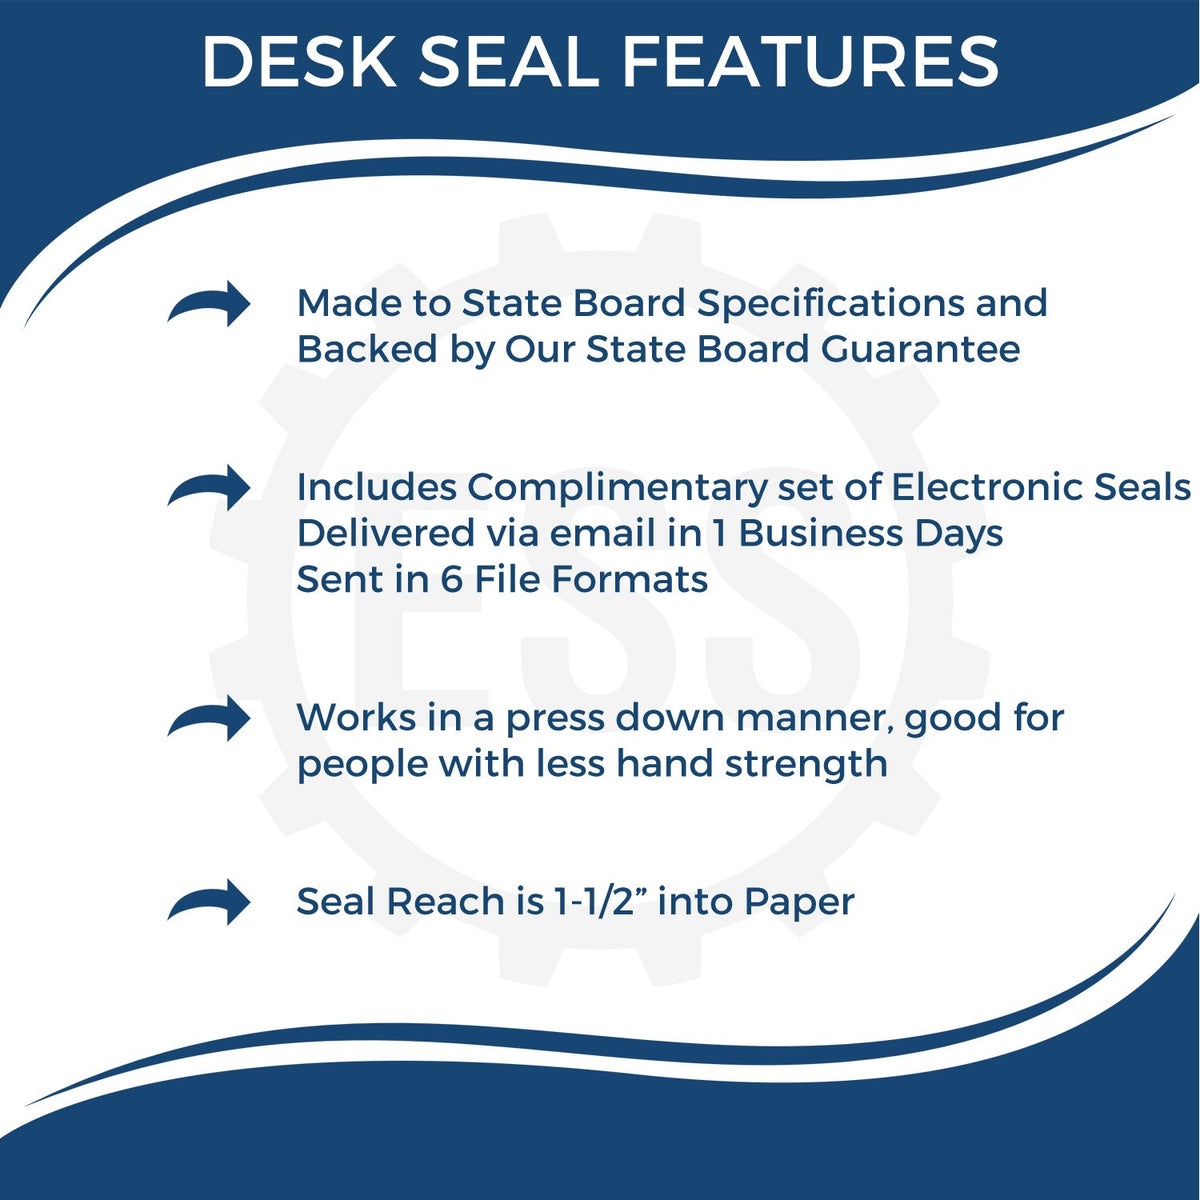 Virginia Engineer Desk Seal